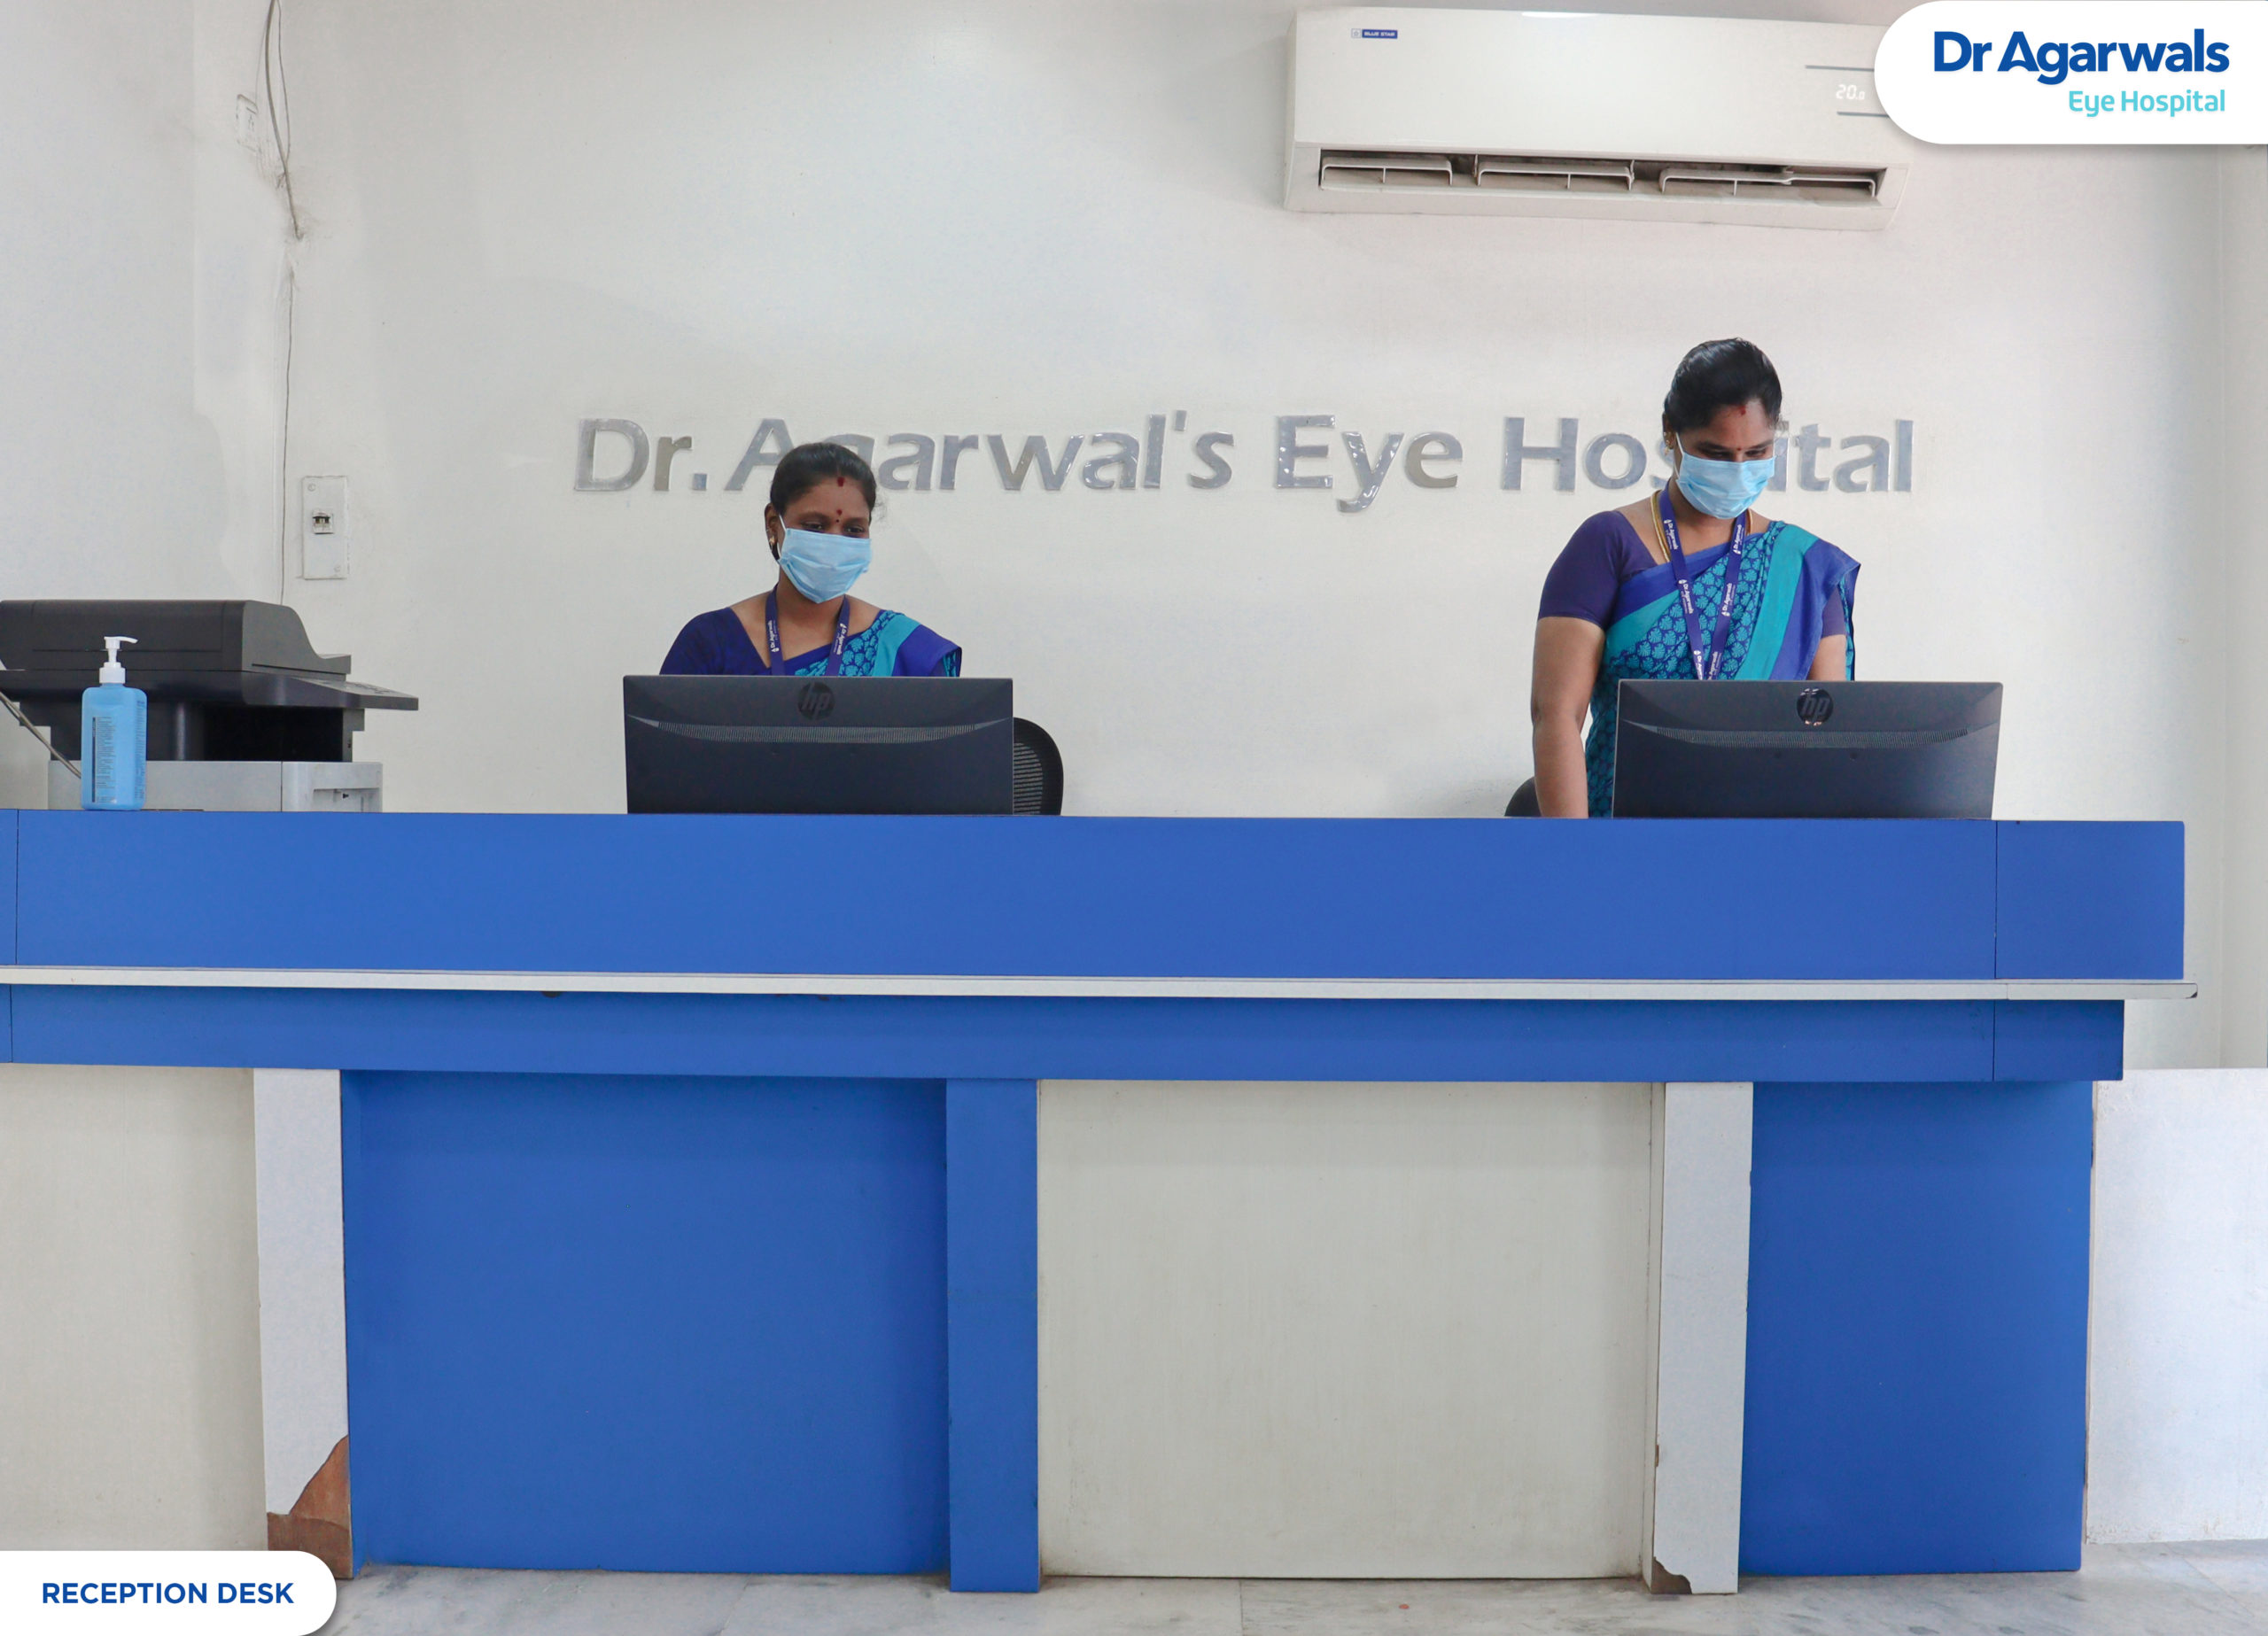 વિલ્લુપુરમ - અગ્રવાલ આંખની હોસ્પિટલના ડો